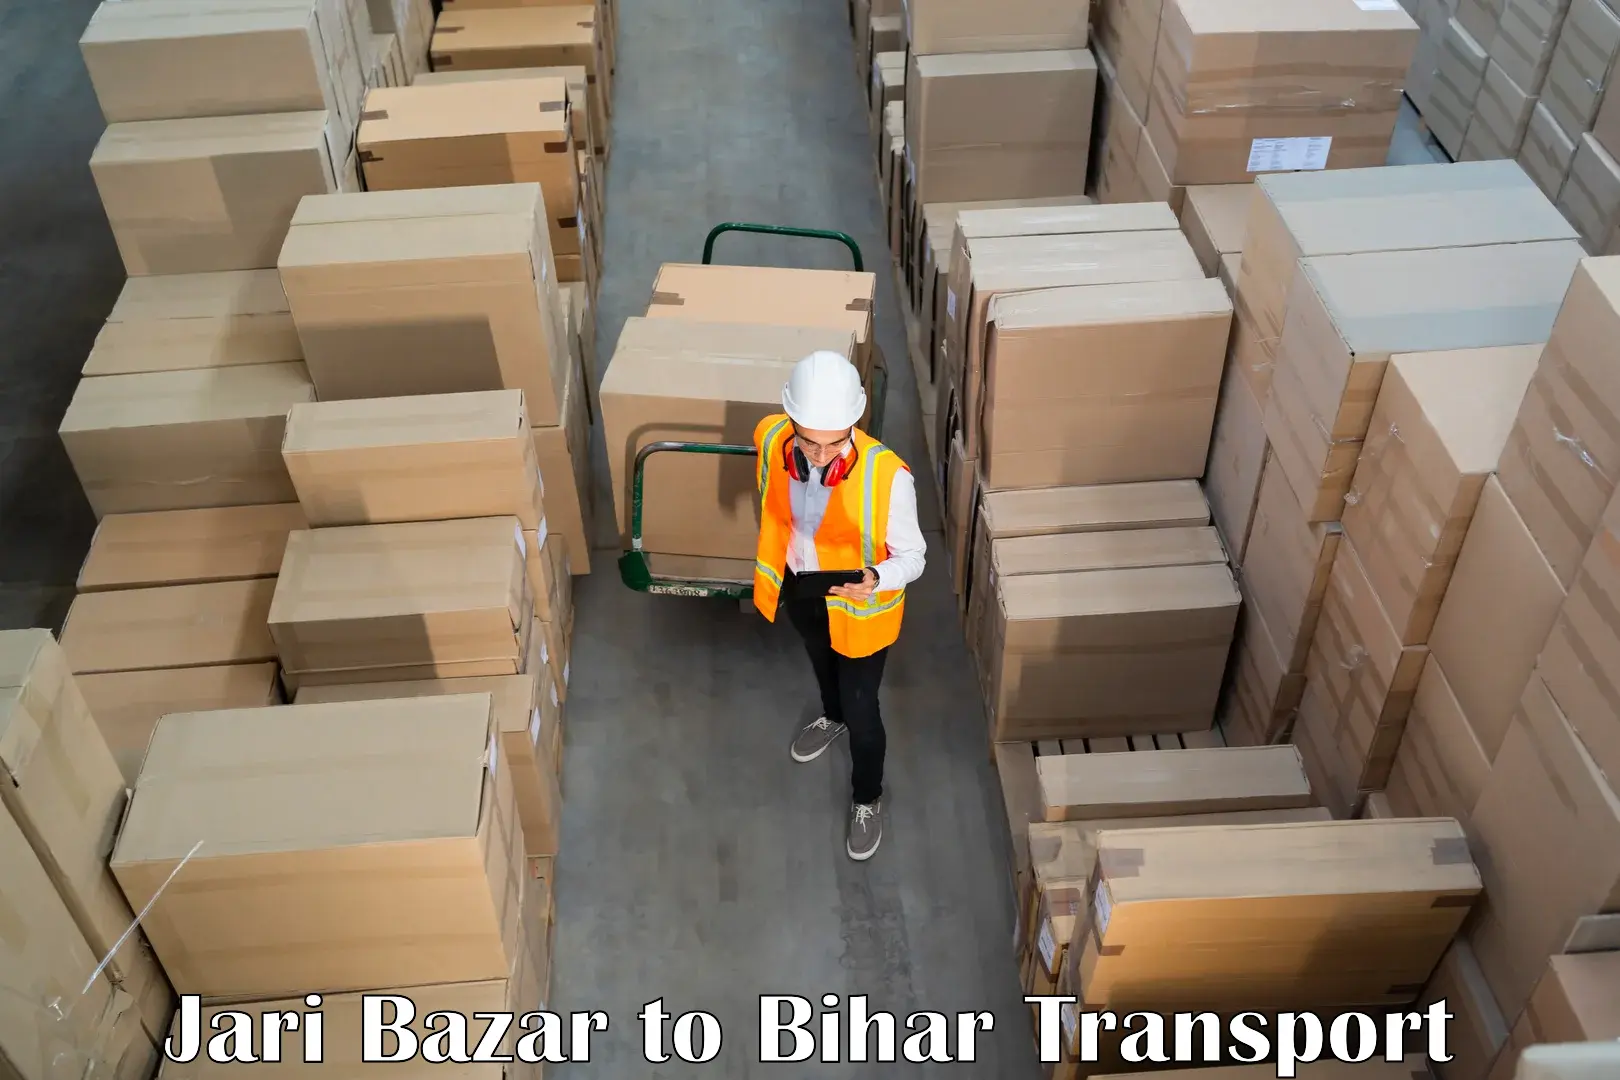 Shipping partner Jari Bazar to Jalalgarh